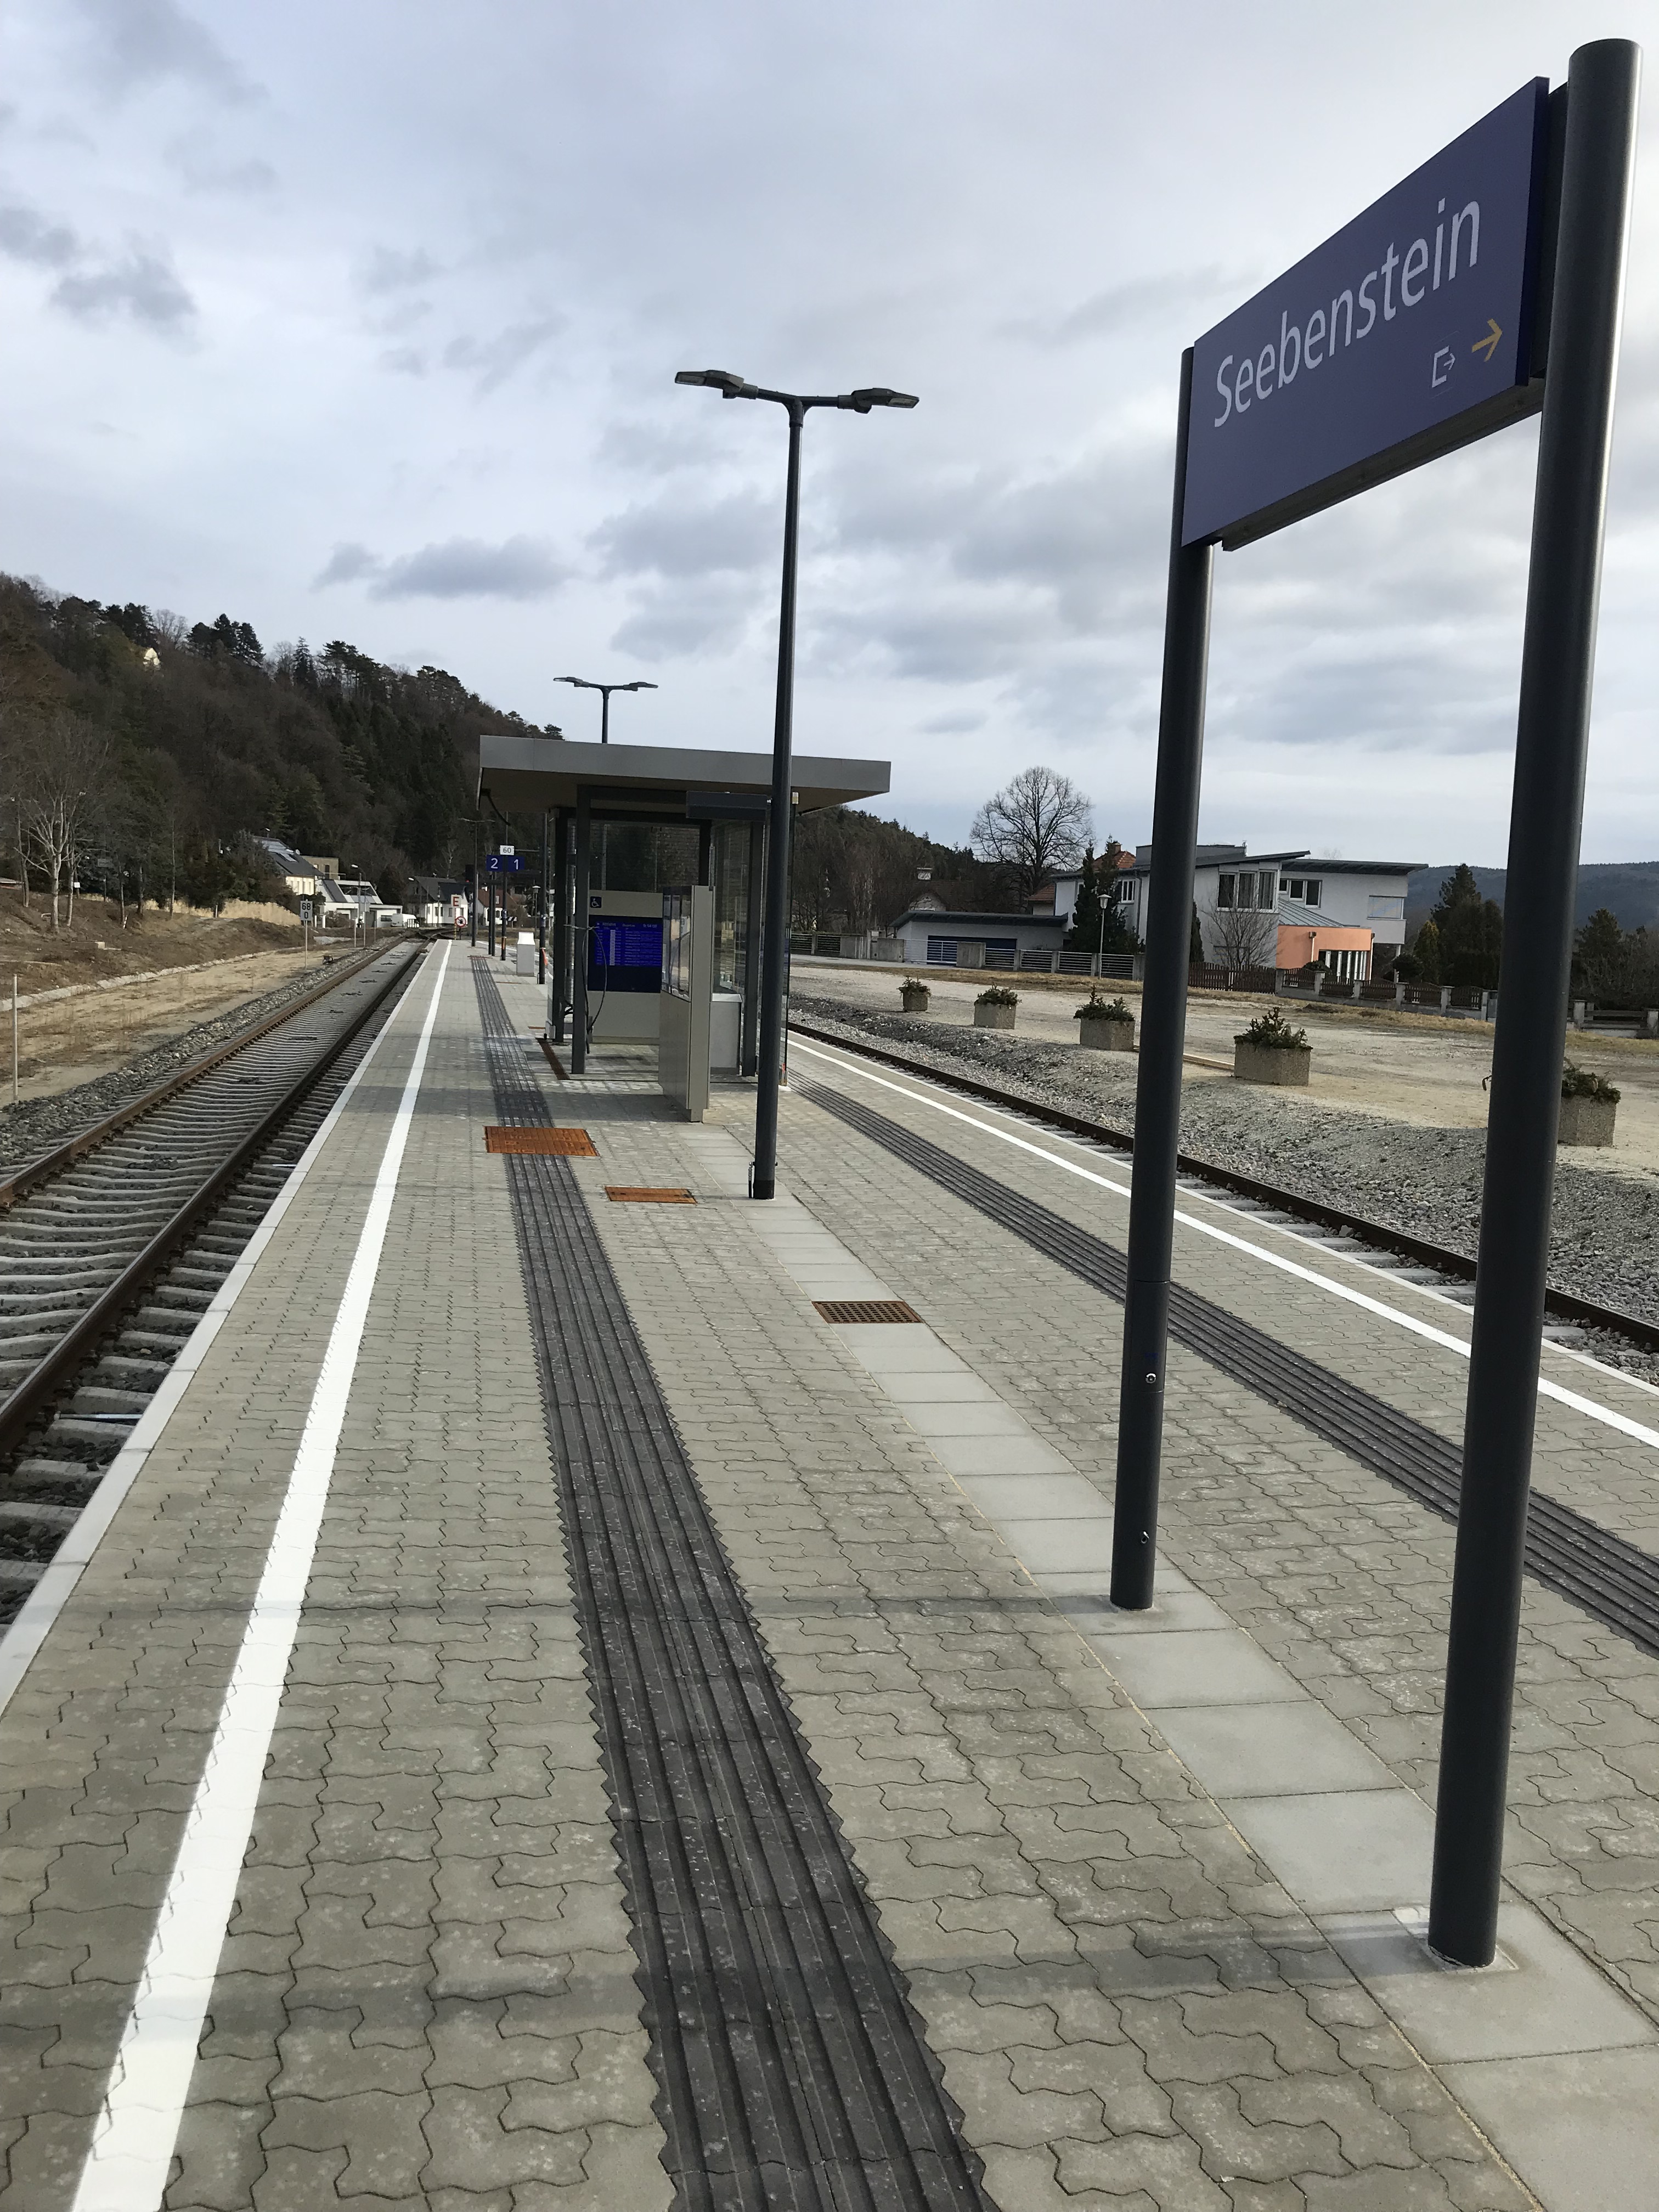 Umbau Bahnhof Seebenstein - Ingegneria civile